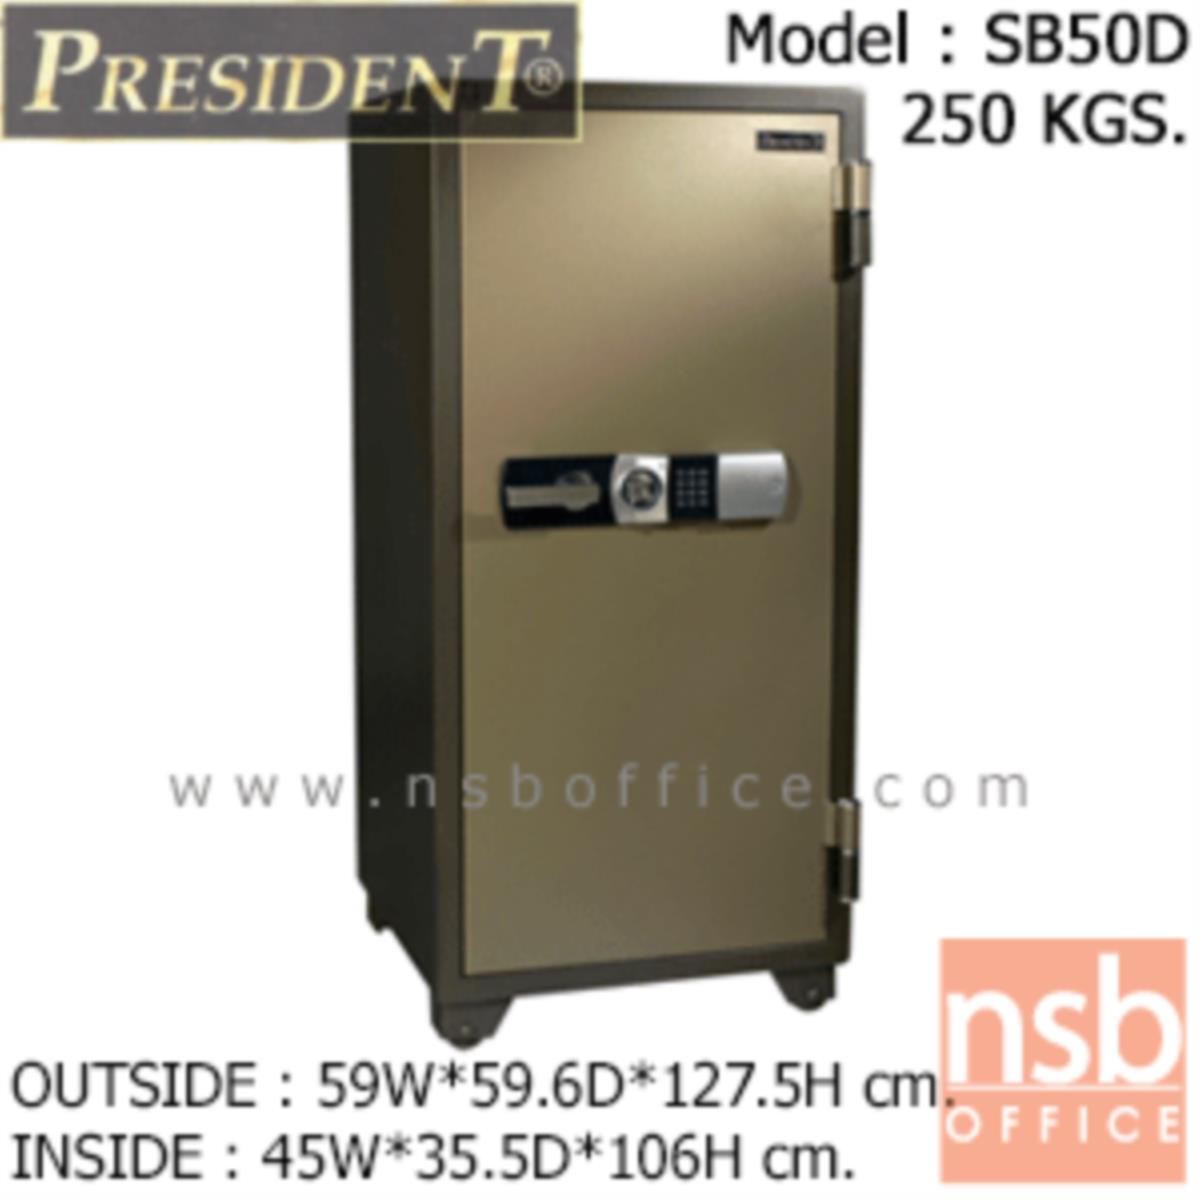 ตู้เซฟนิรภัยชนิดดิจิตอล 250 กก.  รุ่น PRESIDENT-SB50D   มี 1 กุญแจ 1 รหัส (รหัสใช้กดหน้าตู้)